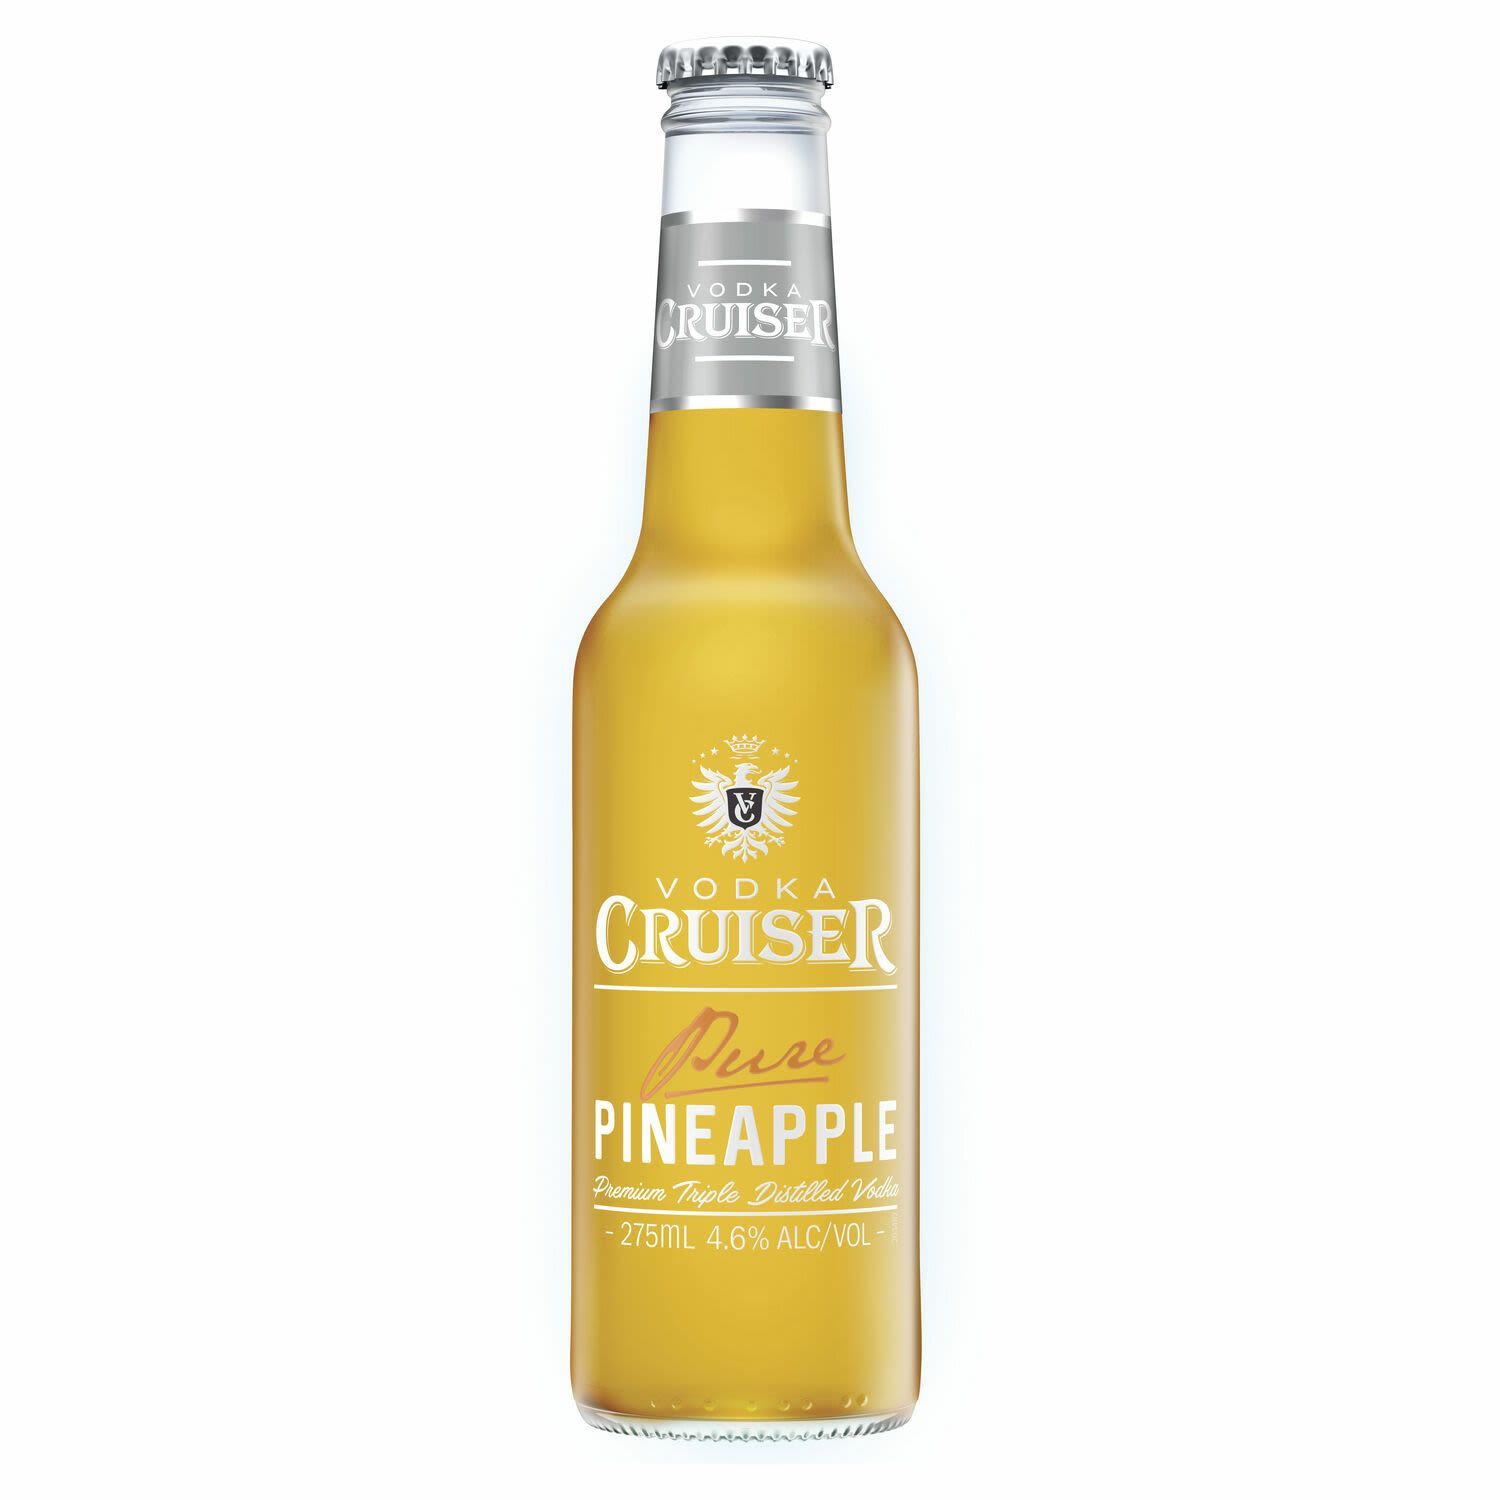 Vodka Cruiser Pure Pineapple 4.6% Bottle 275mL